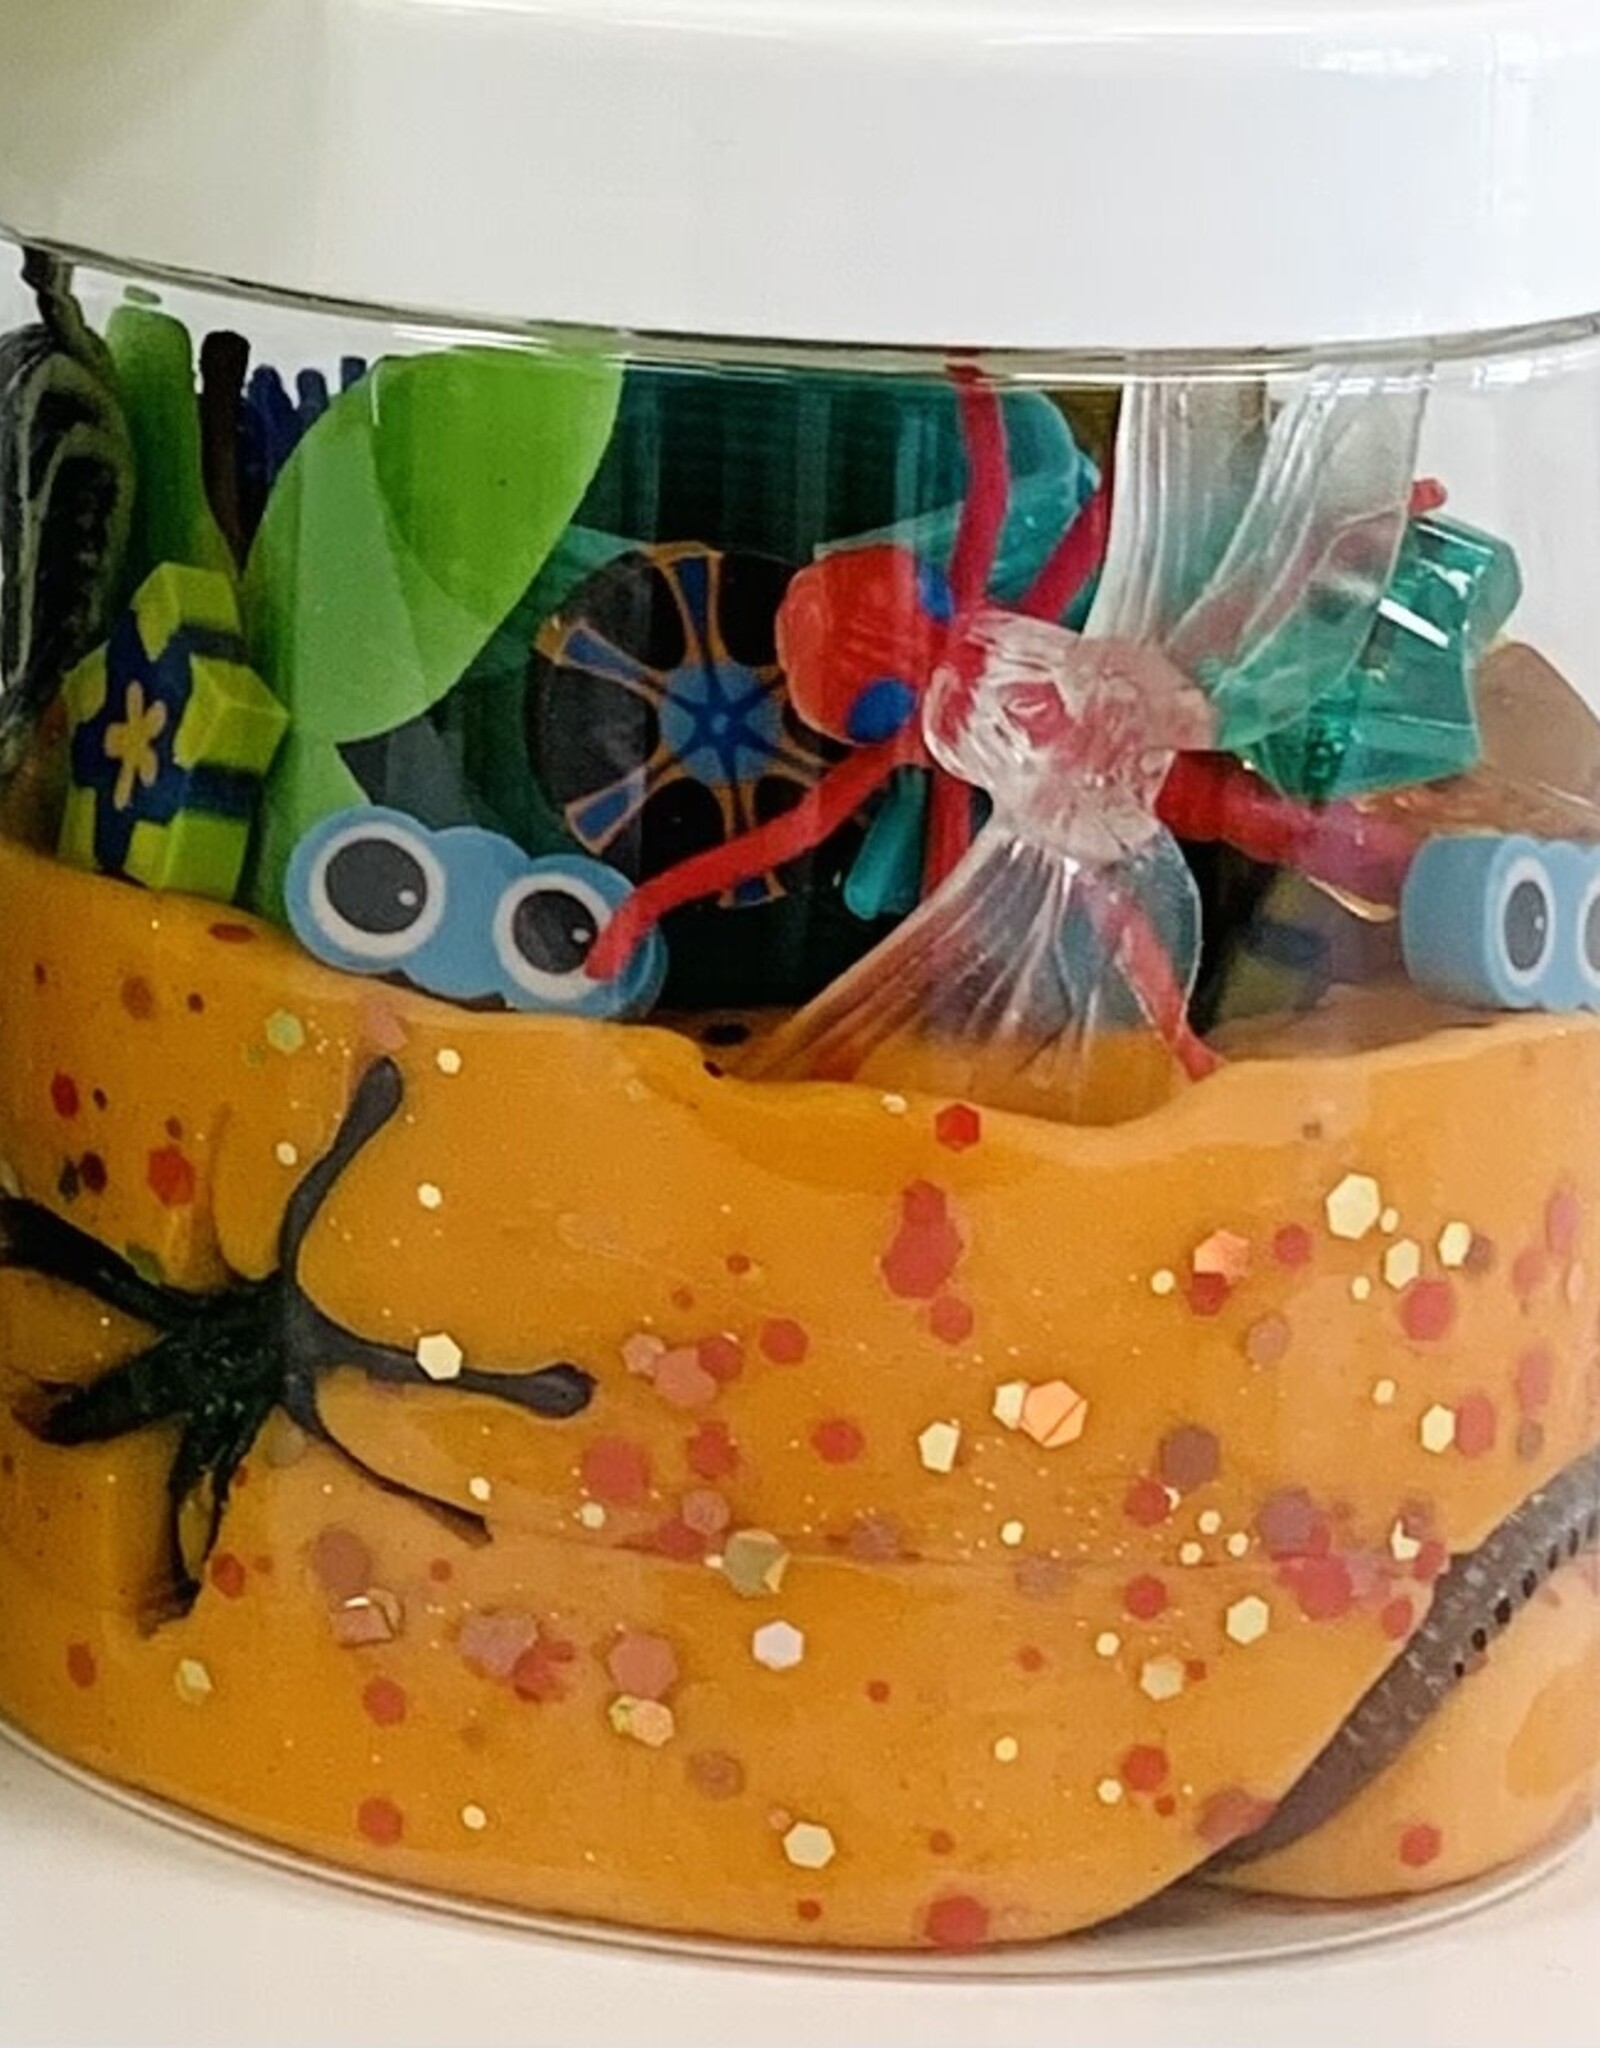 Large Magical Jar of Playdough, Bugs